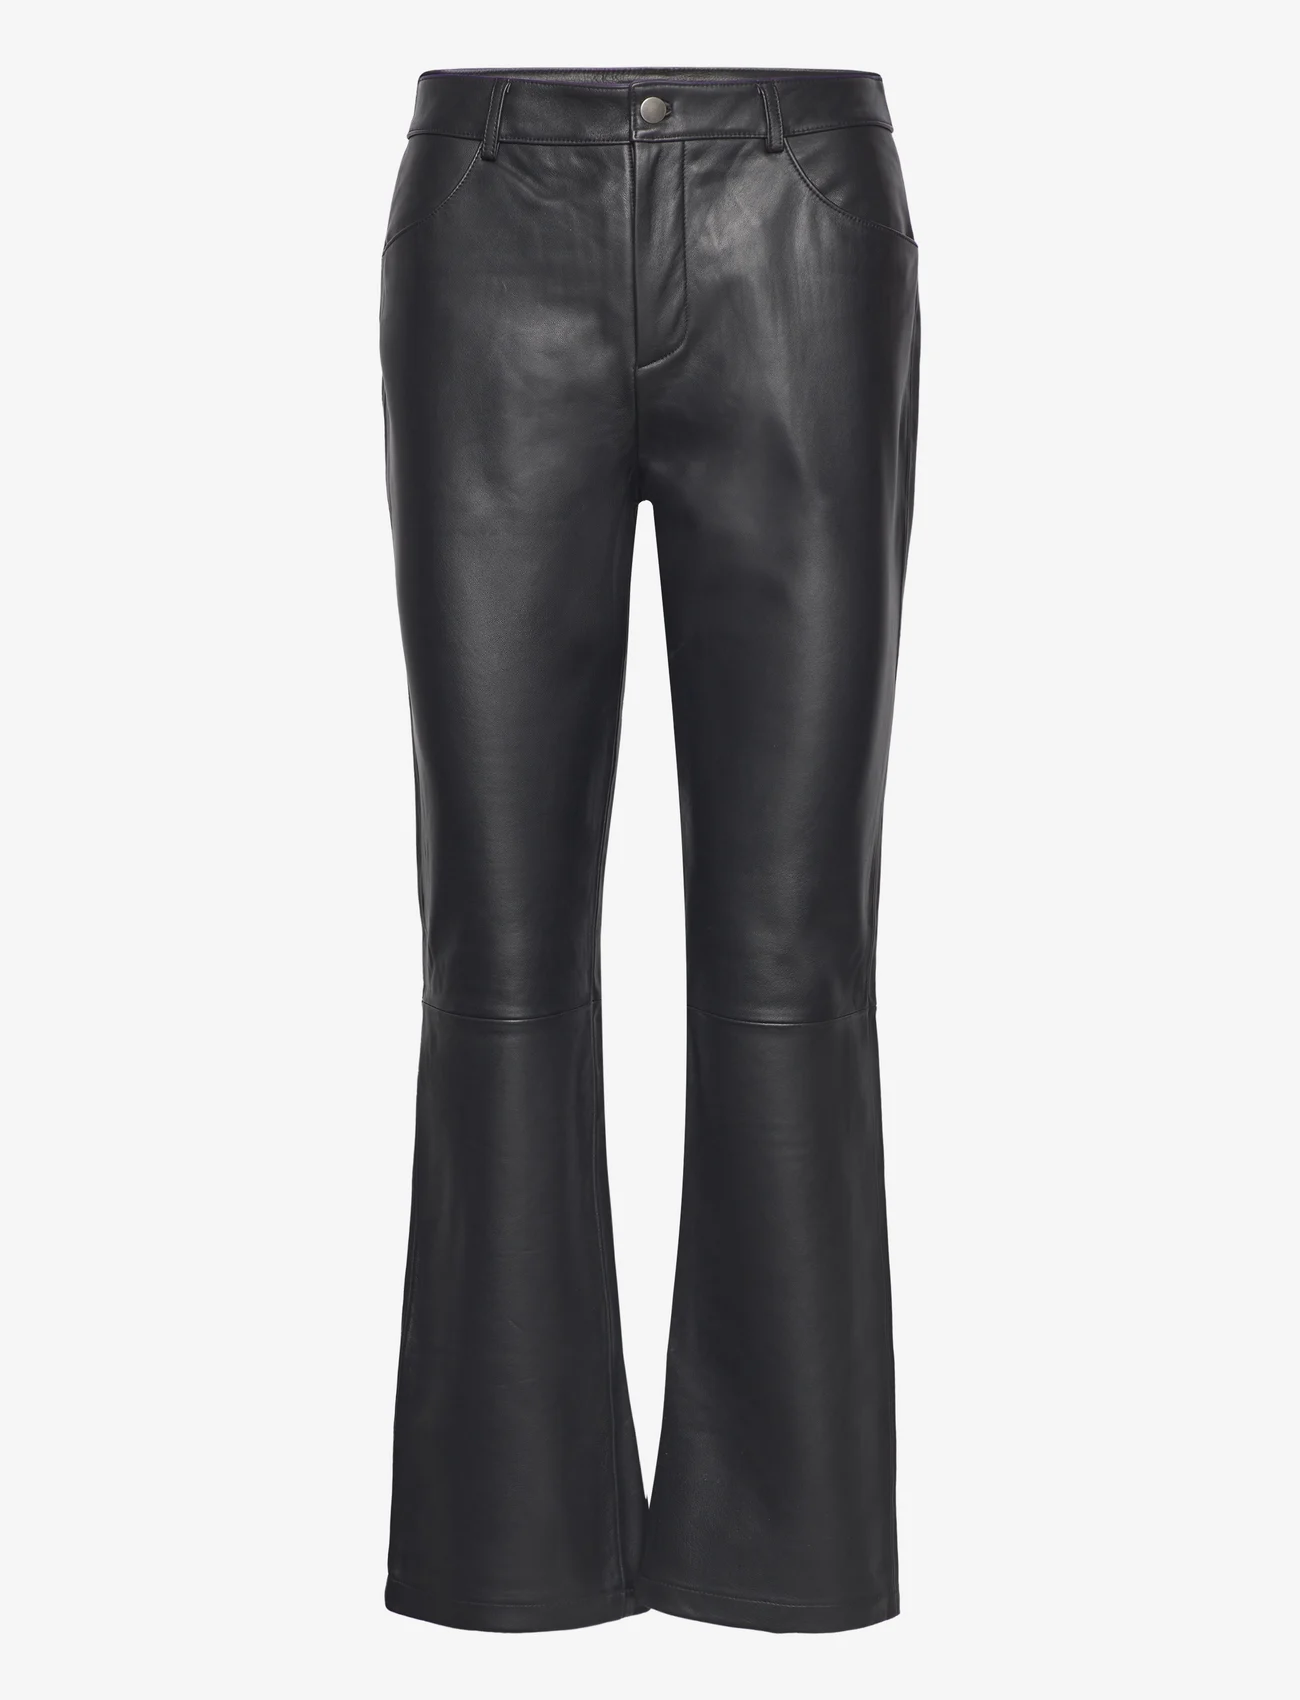 MAUD - Billie Trouser - odzież imprezowa w cenach outletowych - black - 0